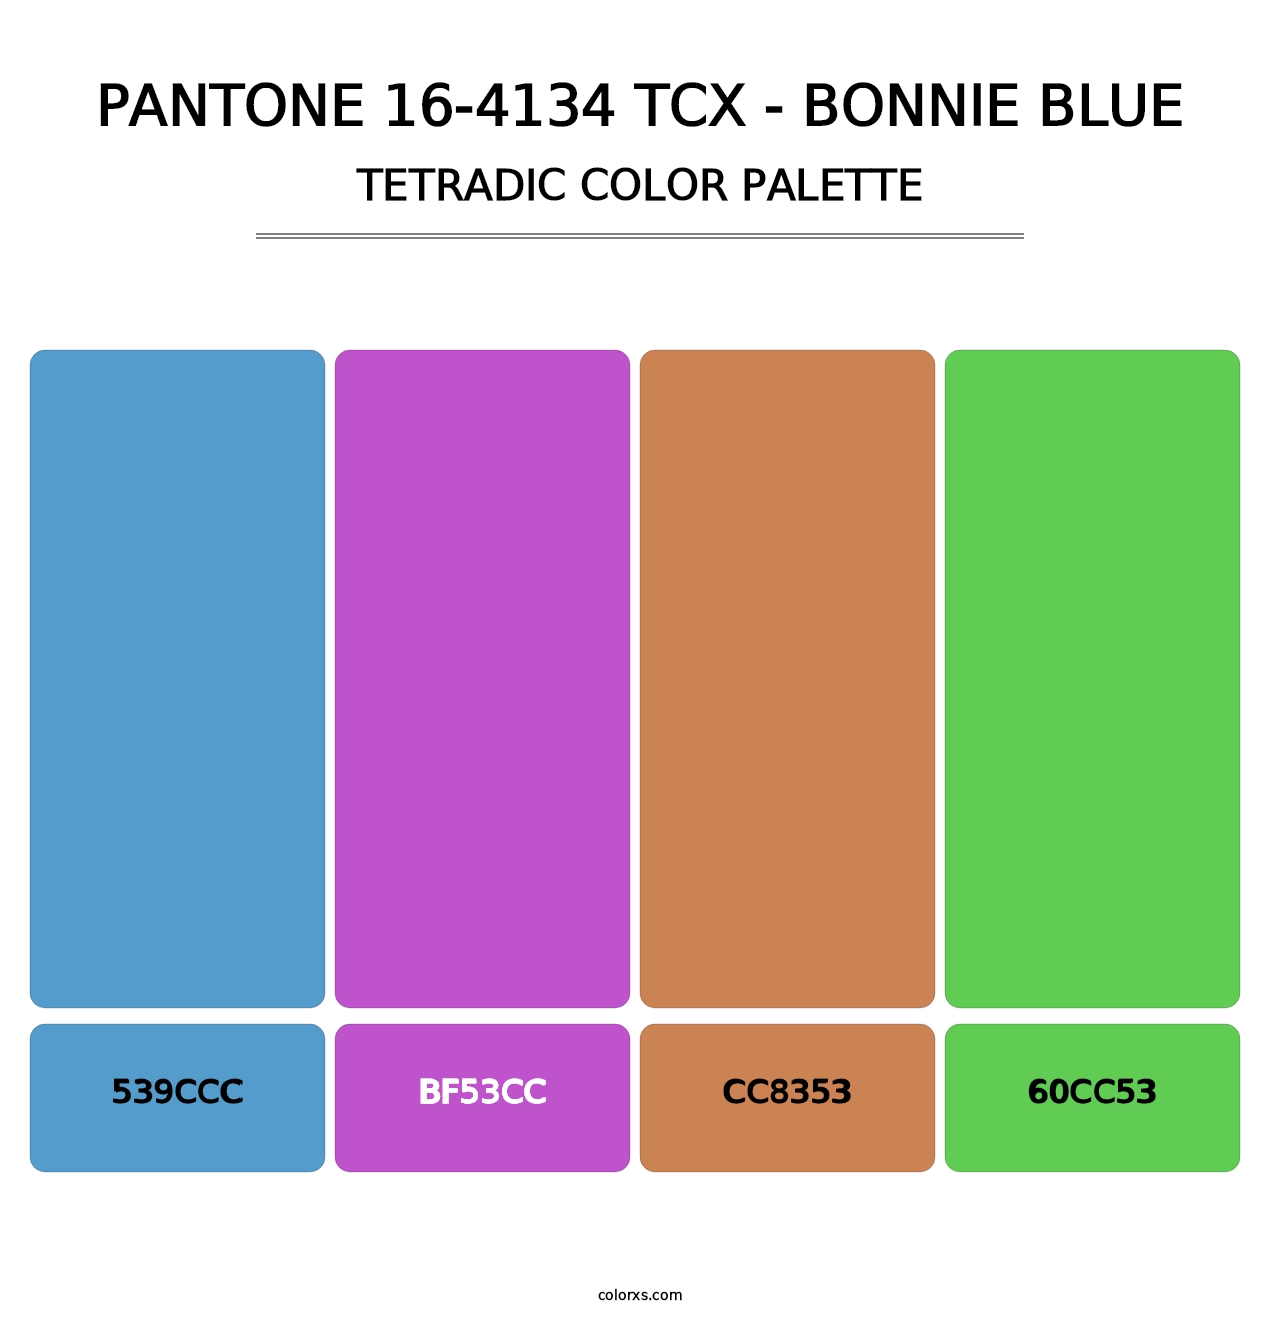 PANTONE 16-4134 TCX - Bonnie Blue - Tetradic Color Palette